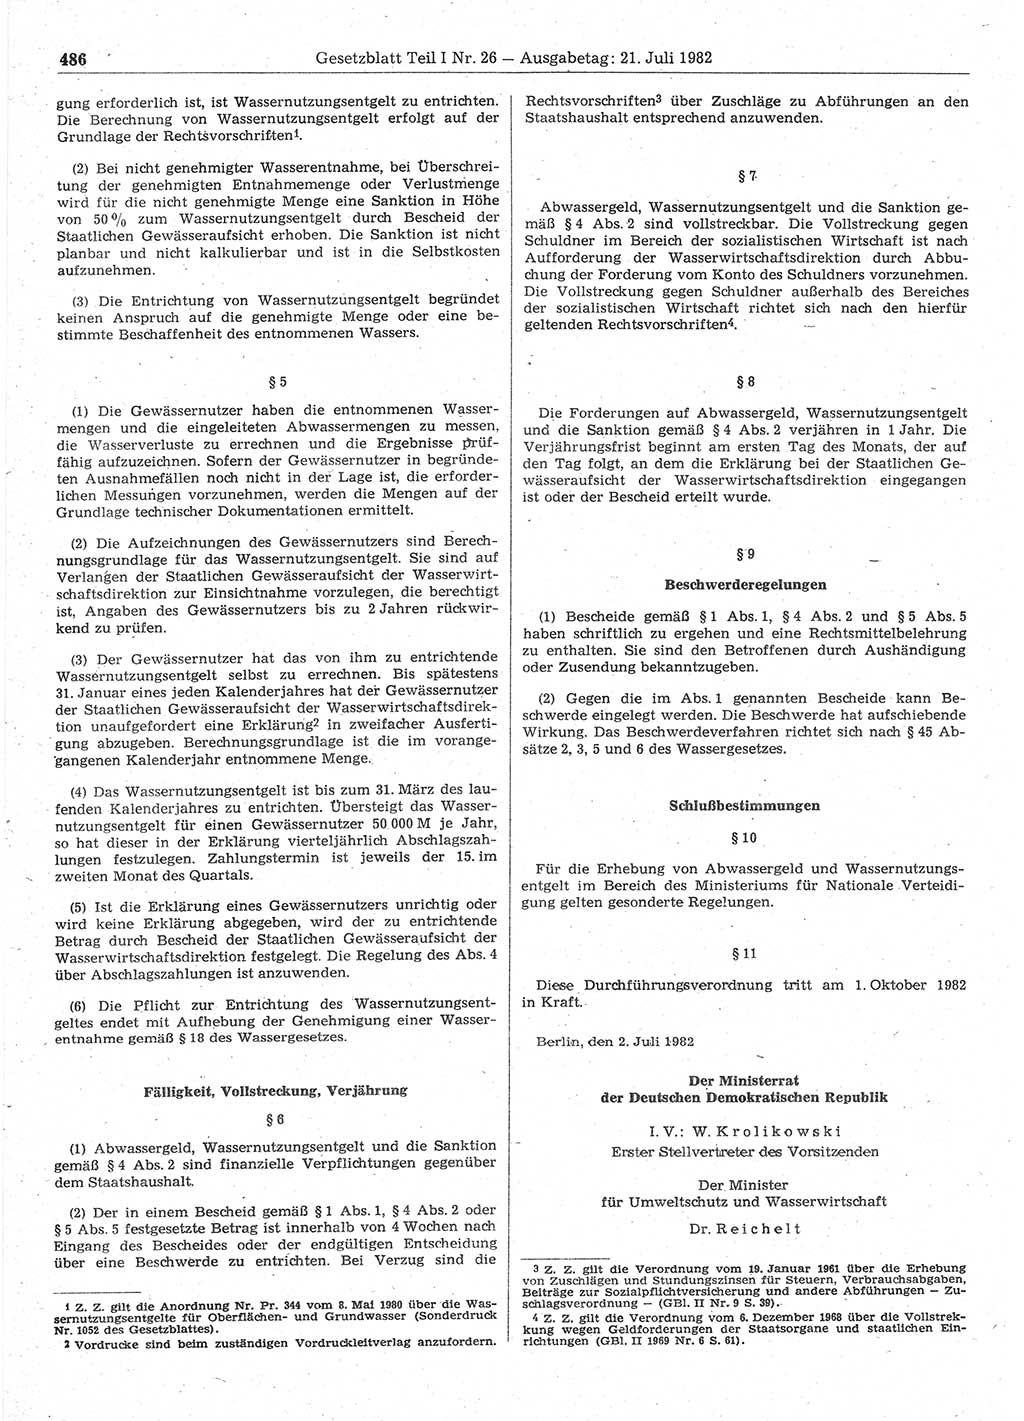 Gesetzblatt (GBl.) der Deutschen Demokratischen Republik (DDR) Teil Ⅰ 1982, Seite 486 (GBl. DDR Ⅰ 1982, S. 486)